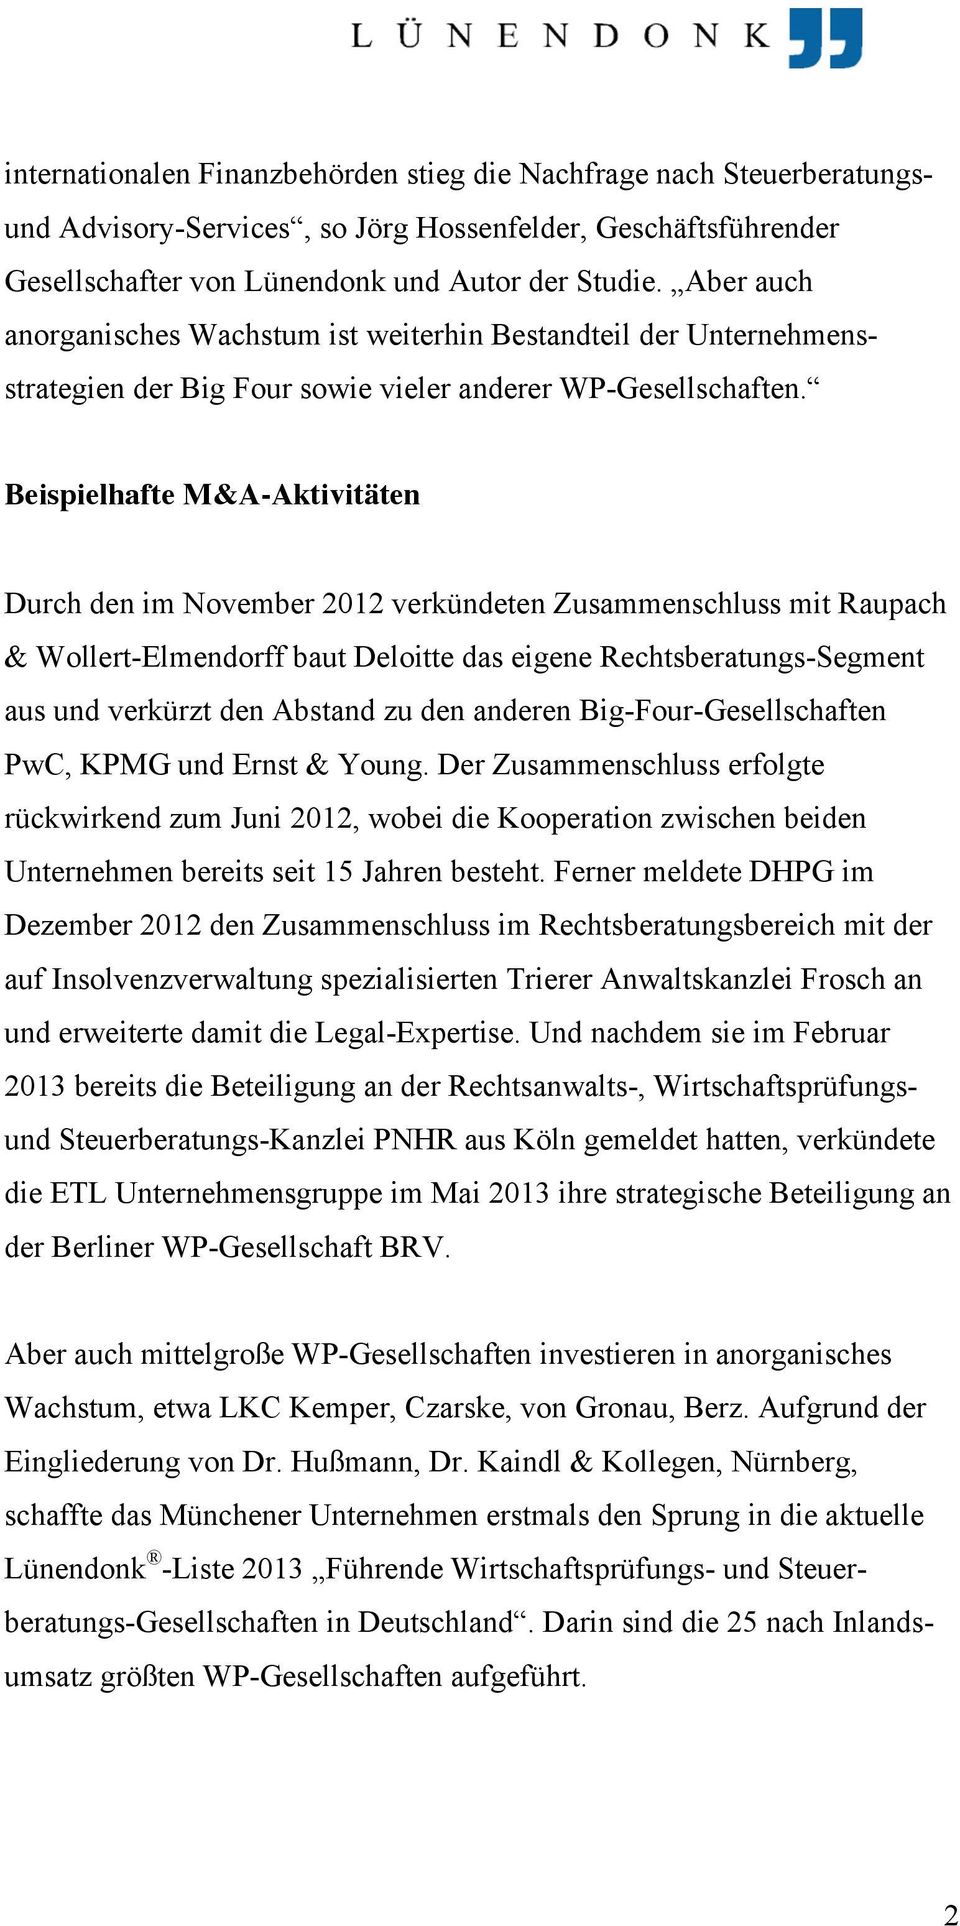 Beispielhafte M&A-Aktivitäten Durch den im November 2012 verkündeten Zusammenschluss mit Raupach & Wollert-Elmendorff baut Deloitte das eigene Rechtsberatungs-Segment aus und verkürzt den Abstand zu